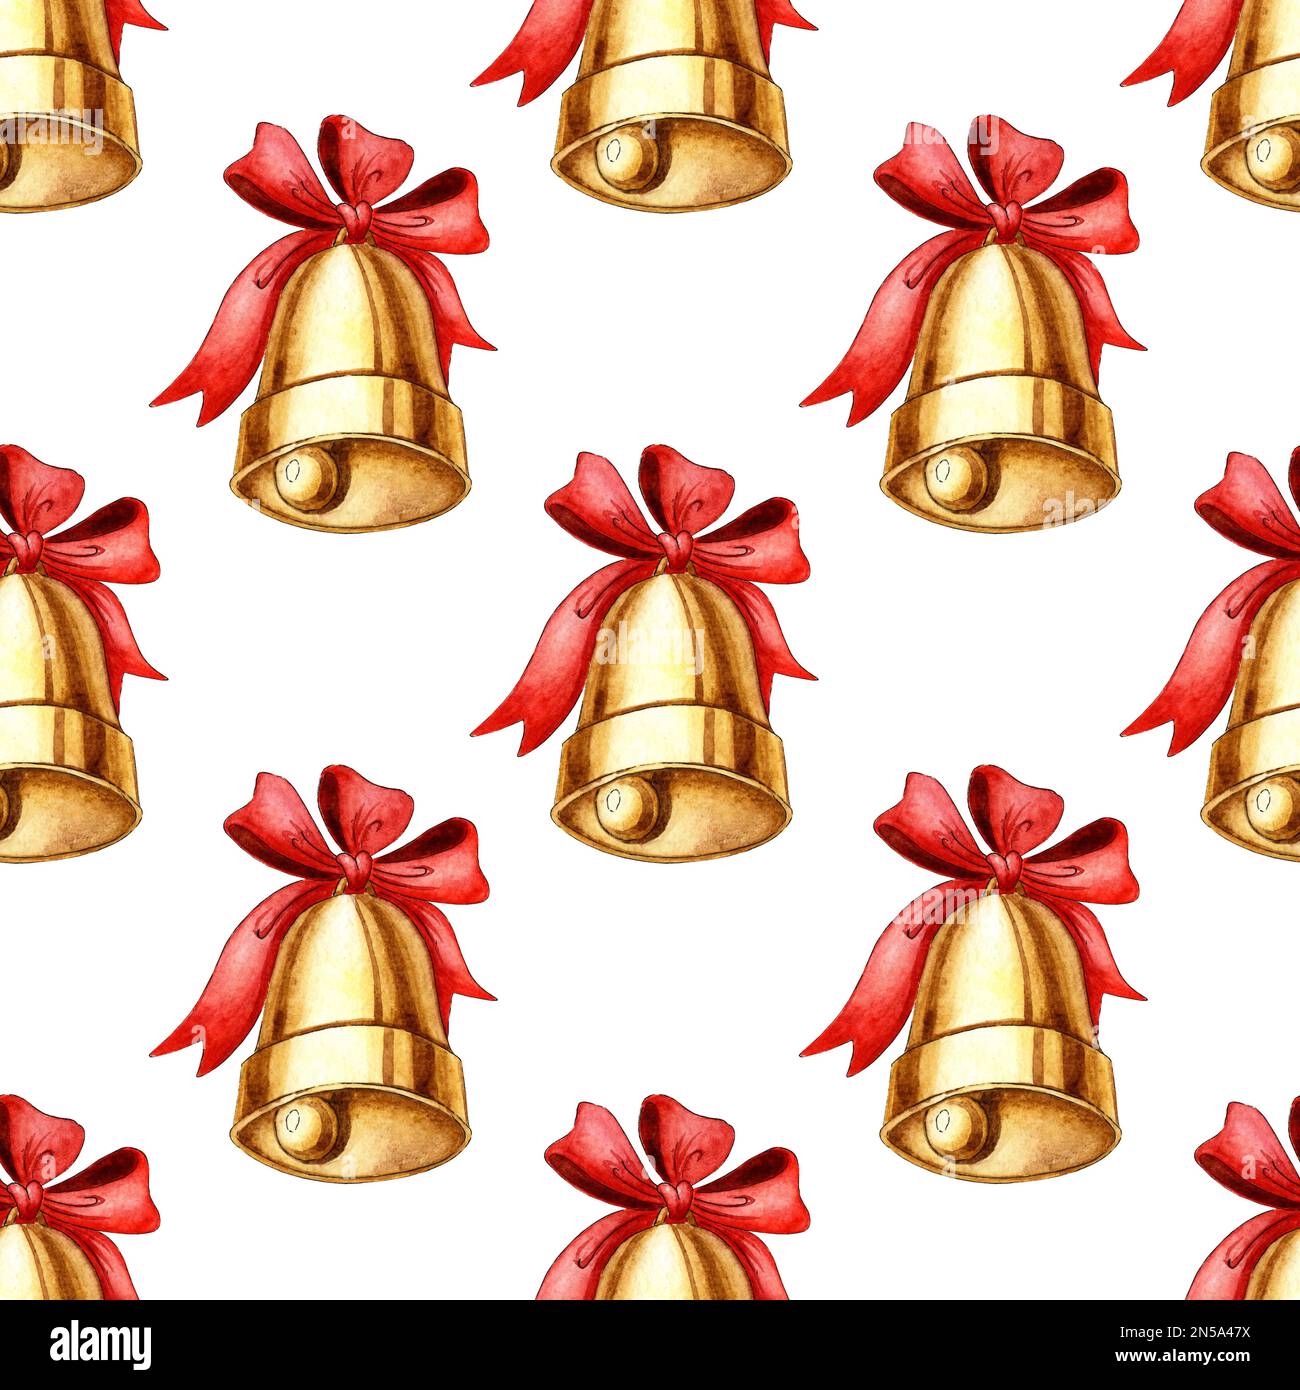 Goldene Metallglocke mit Aquarellmuster und roter Schleife auf weißem Hintergrund. Symbol für Weihnachten und Neujahr, Schulglocke, alte Glocke. Von Hand gezeichnet. Stockfoto